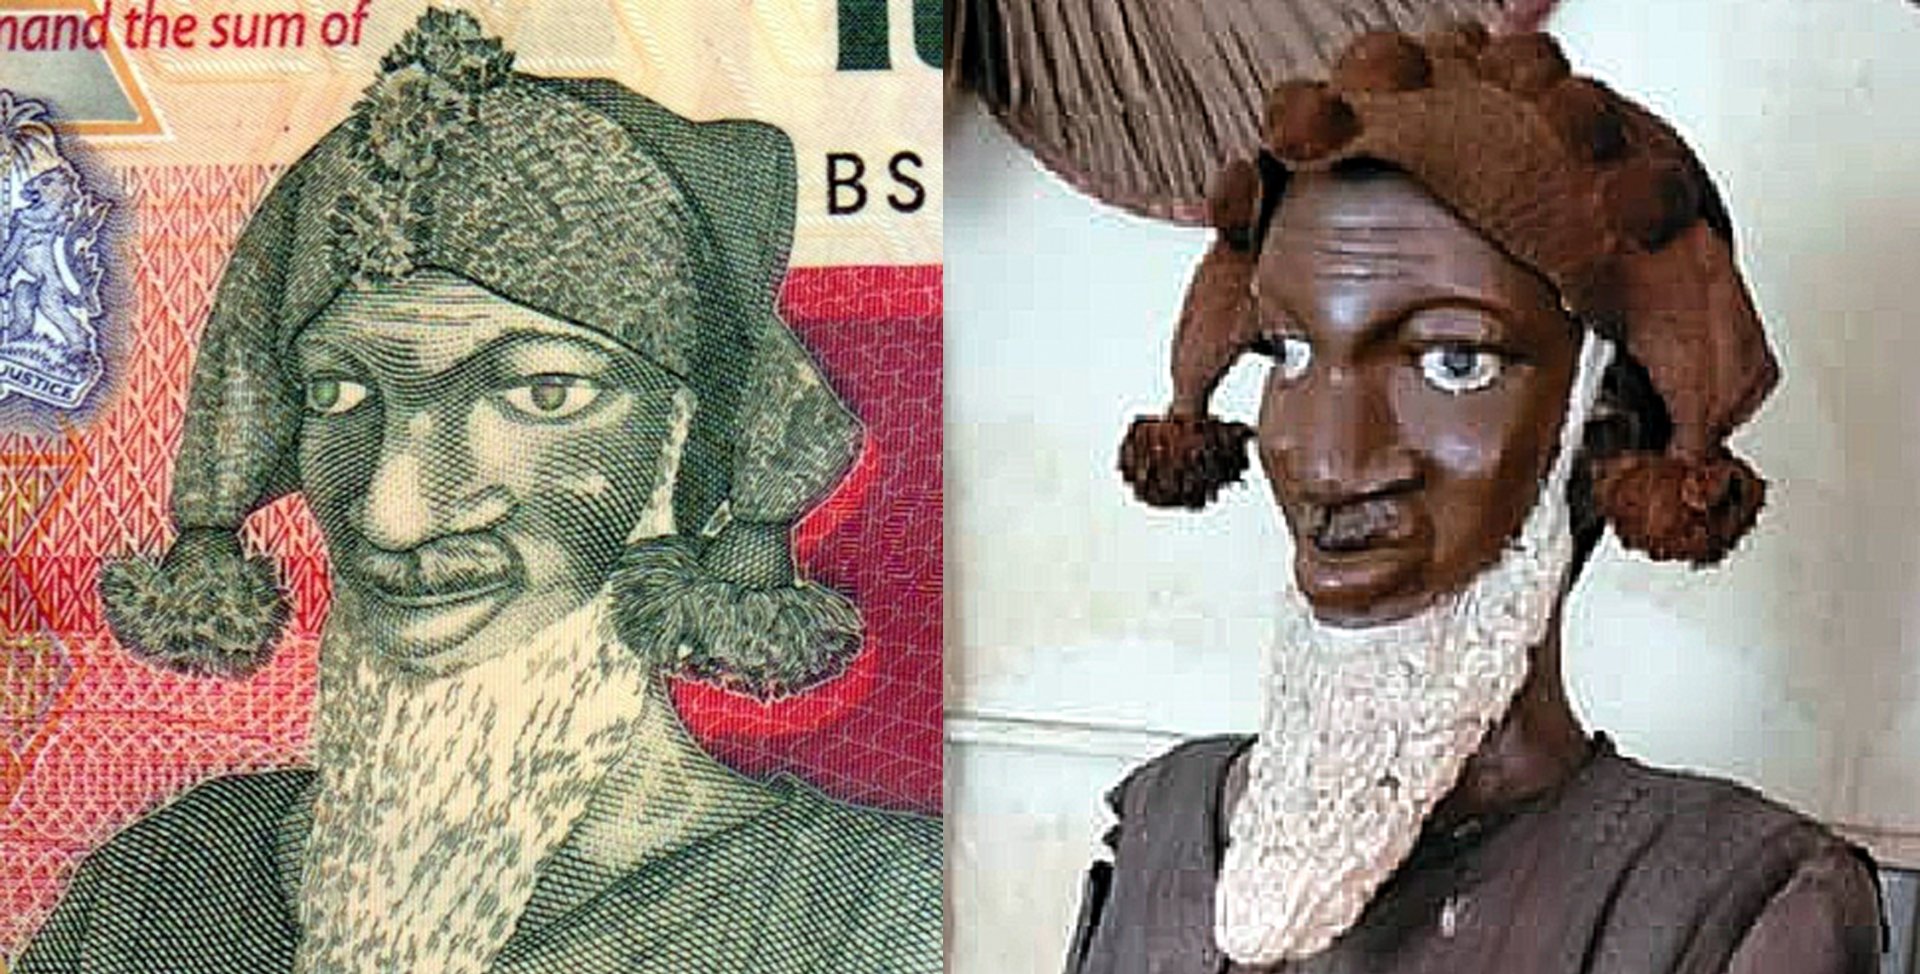 Obr.1. A) Portrét Bai Bureha na bankovce P-20. B) Předlohou portrétu je skulptura vytvořená v roce 1963. Výřez z fotografie neznámého autora. Převzato z: https://awokonewspaper.sl/former-peace-corps-gary-schulze-bemoans-use-of-wrong-bai-bureh-picture-on-face-of-new-leone/